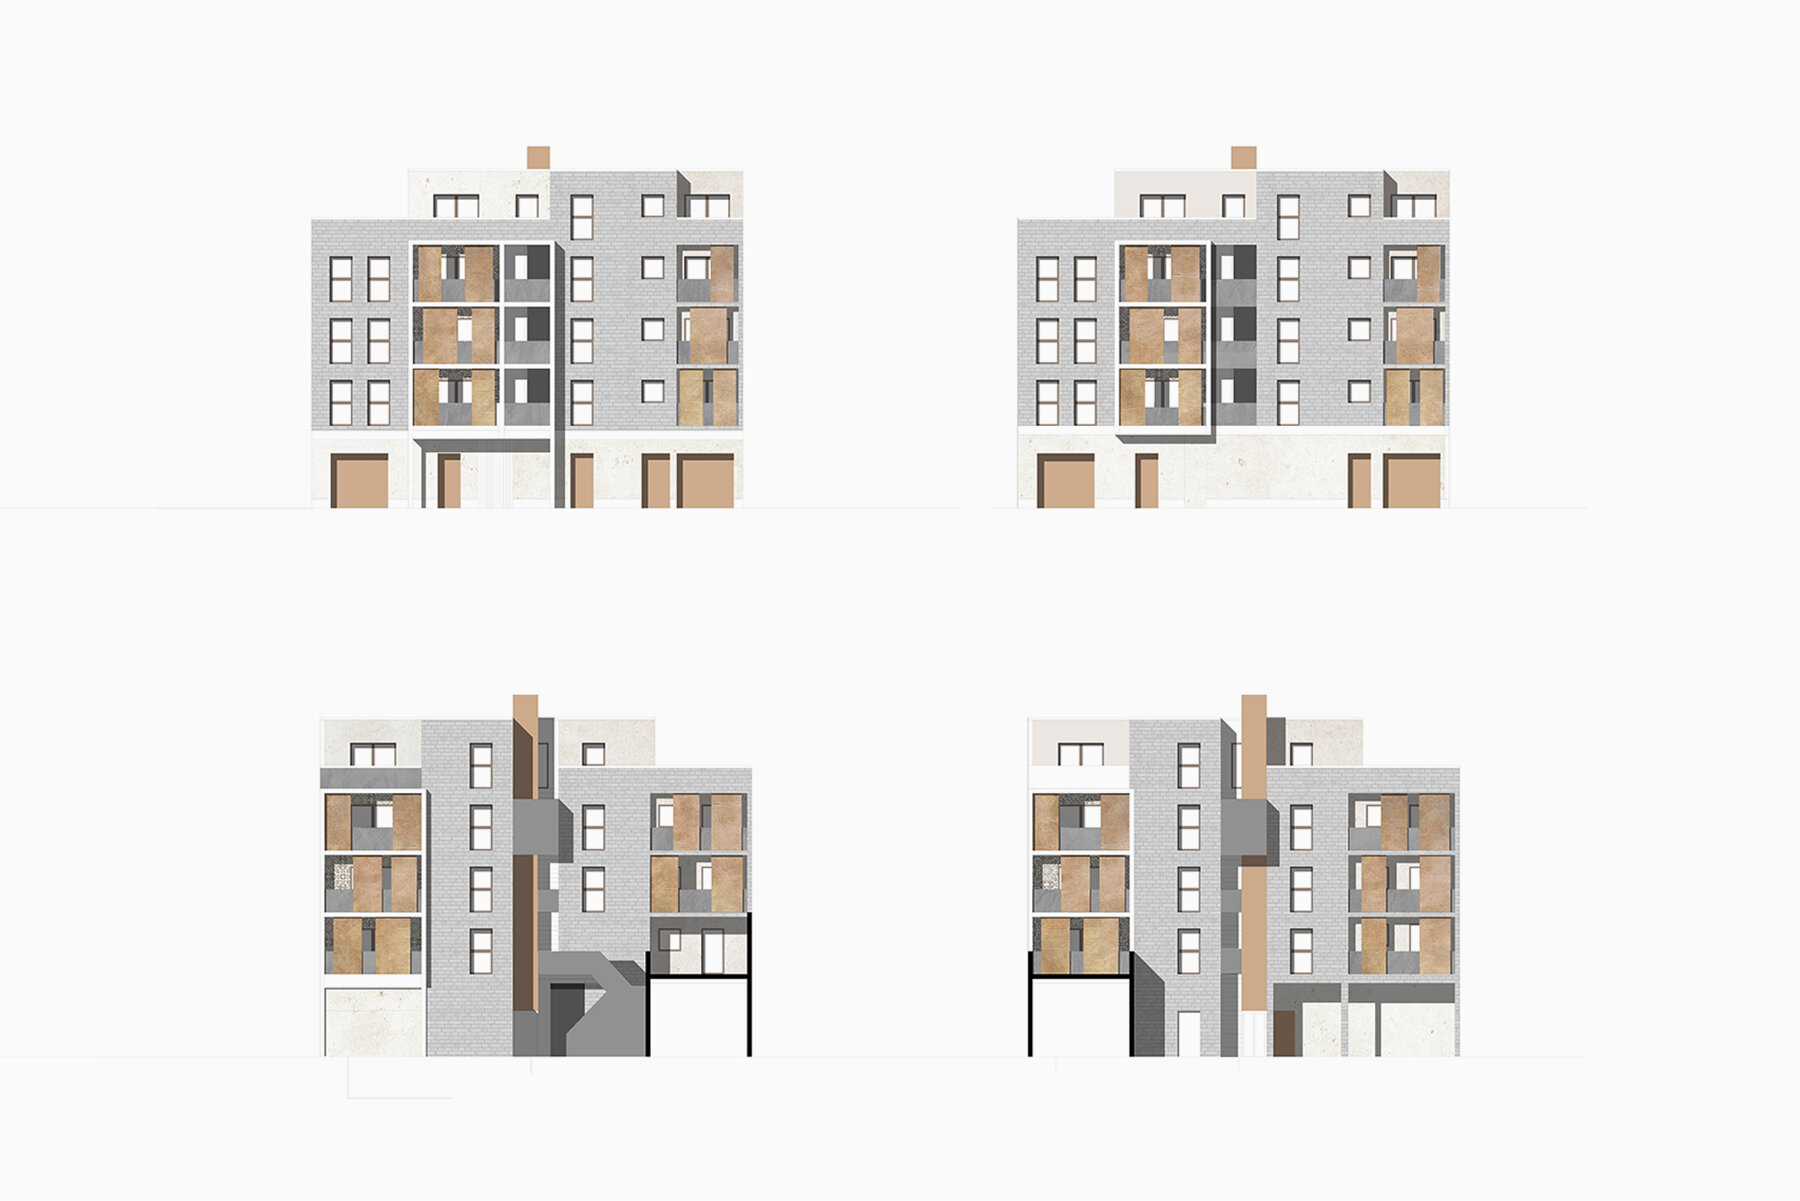 Construction neuve - Logements collectifs par un architecte Archidvisor